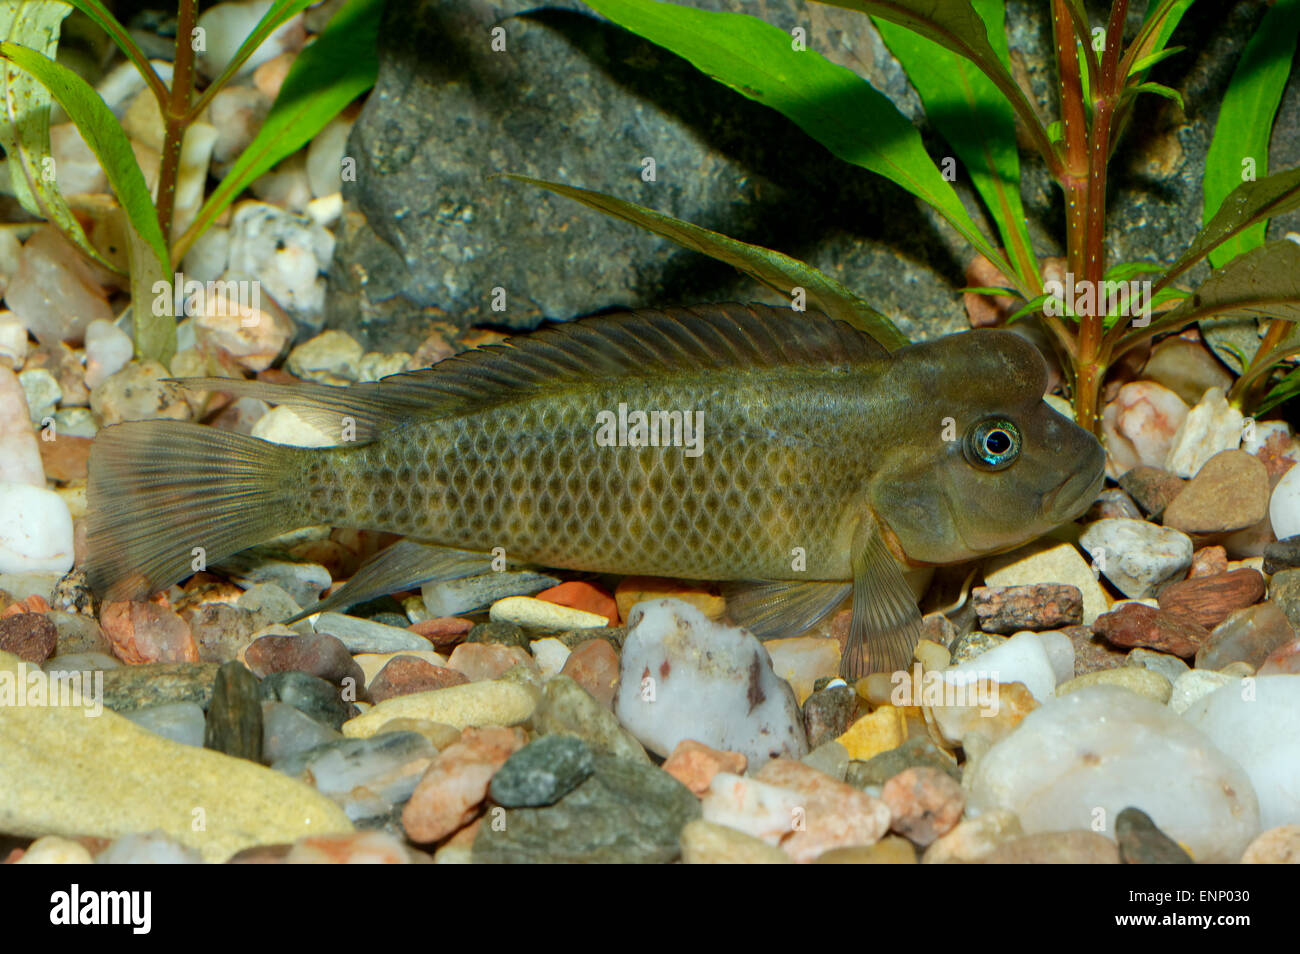 Nice cichlid fish from genus Steatocranus in aquaraium. Stock Photo